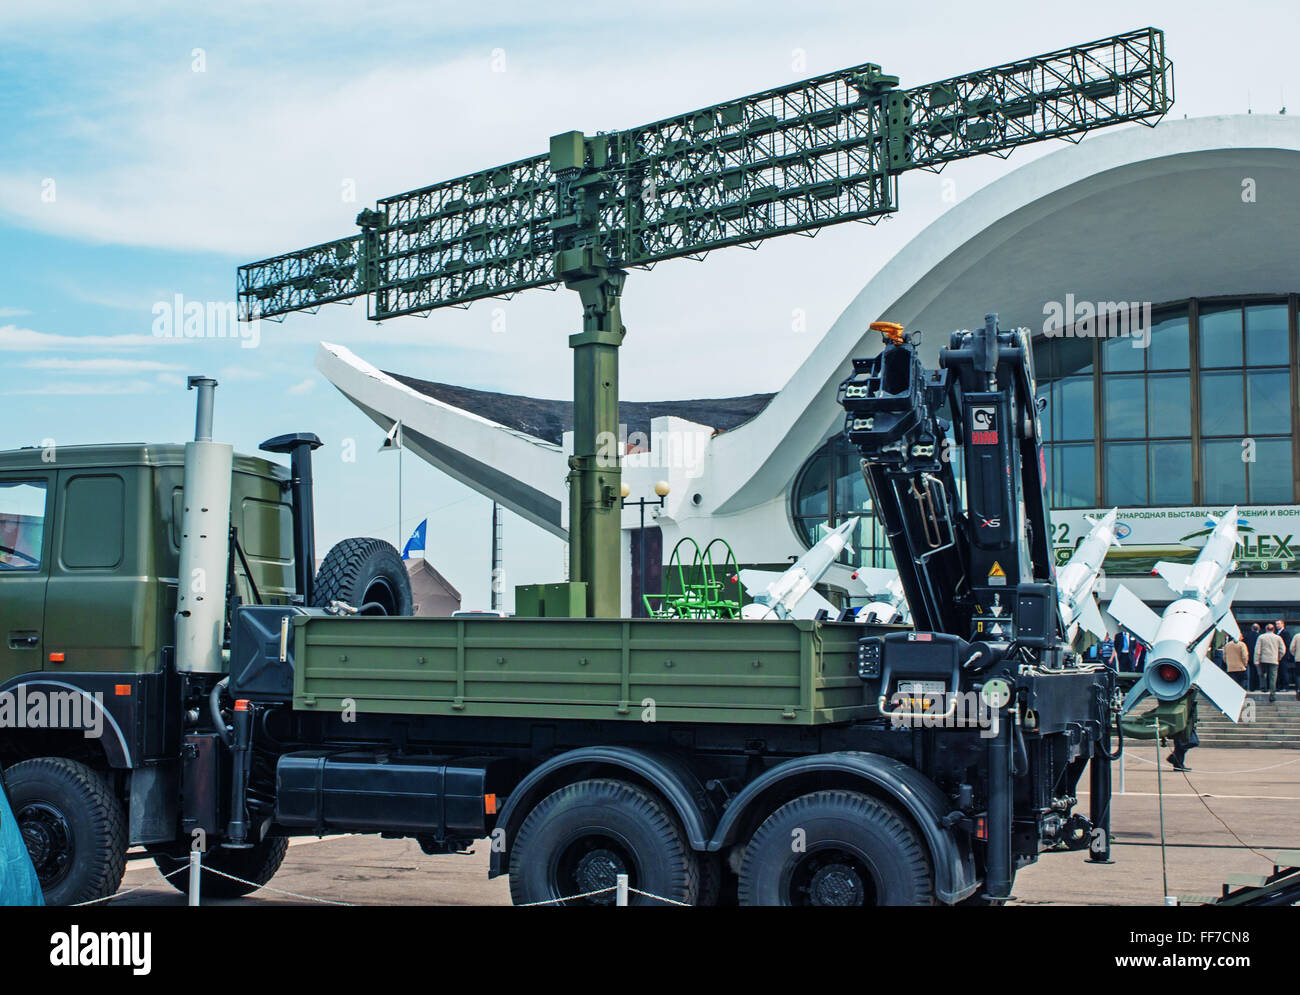 5e exposition militaire biélorusse MILEX 2009 - mai 2009.chariot avec le manipulateur de chargement du fret.roquettes et radar. Banque D'Images